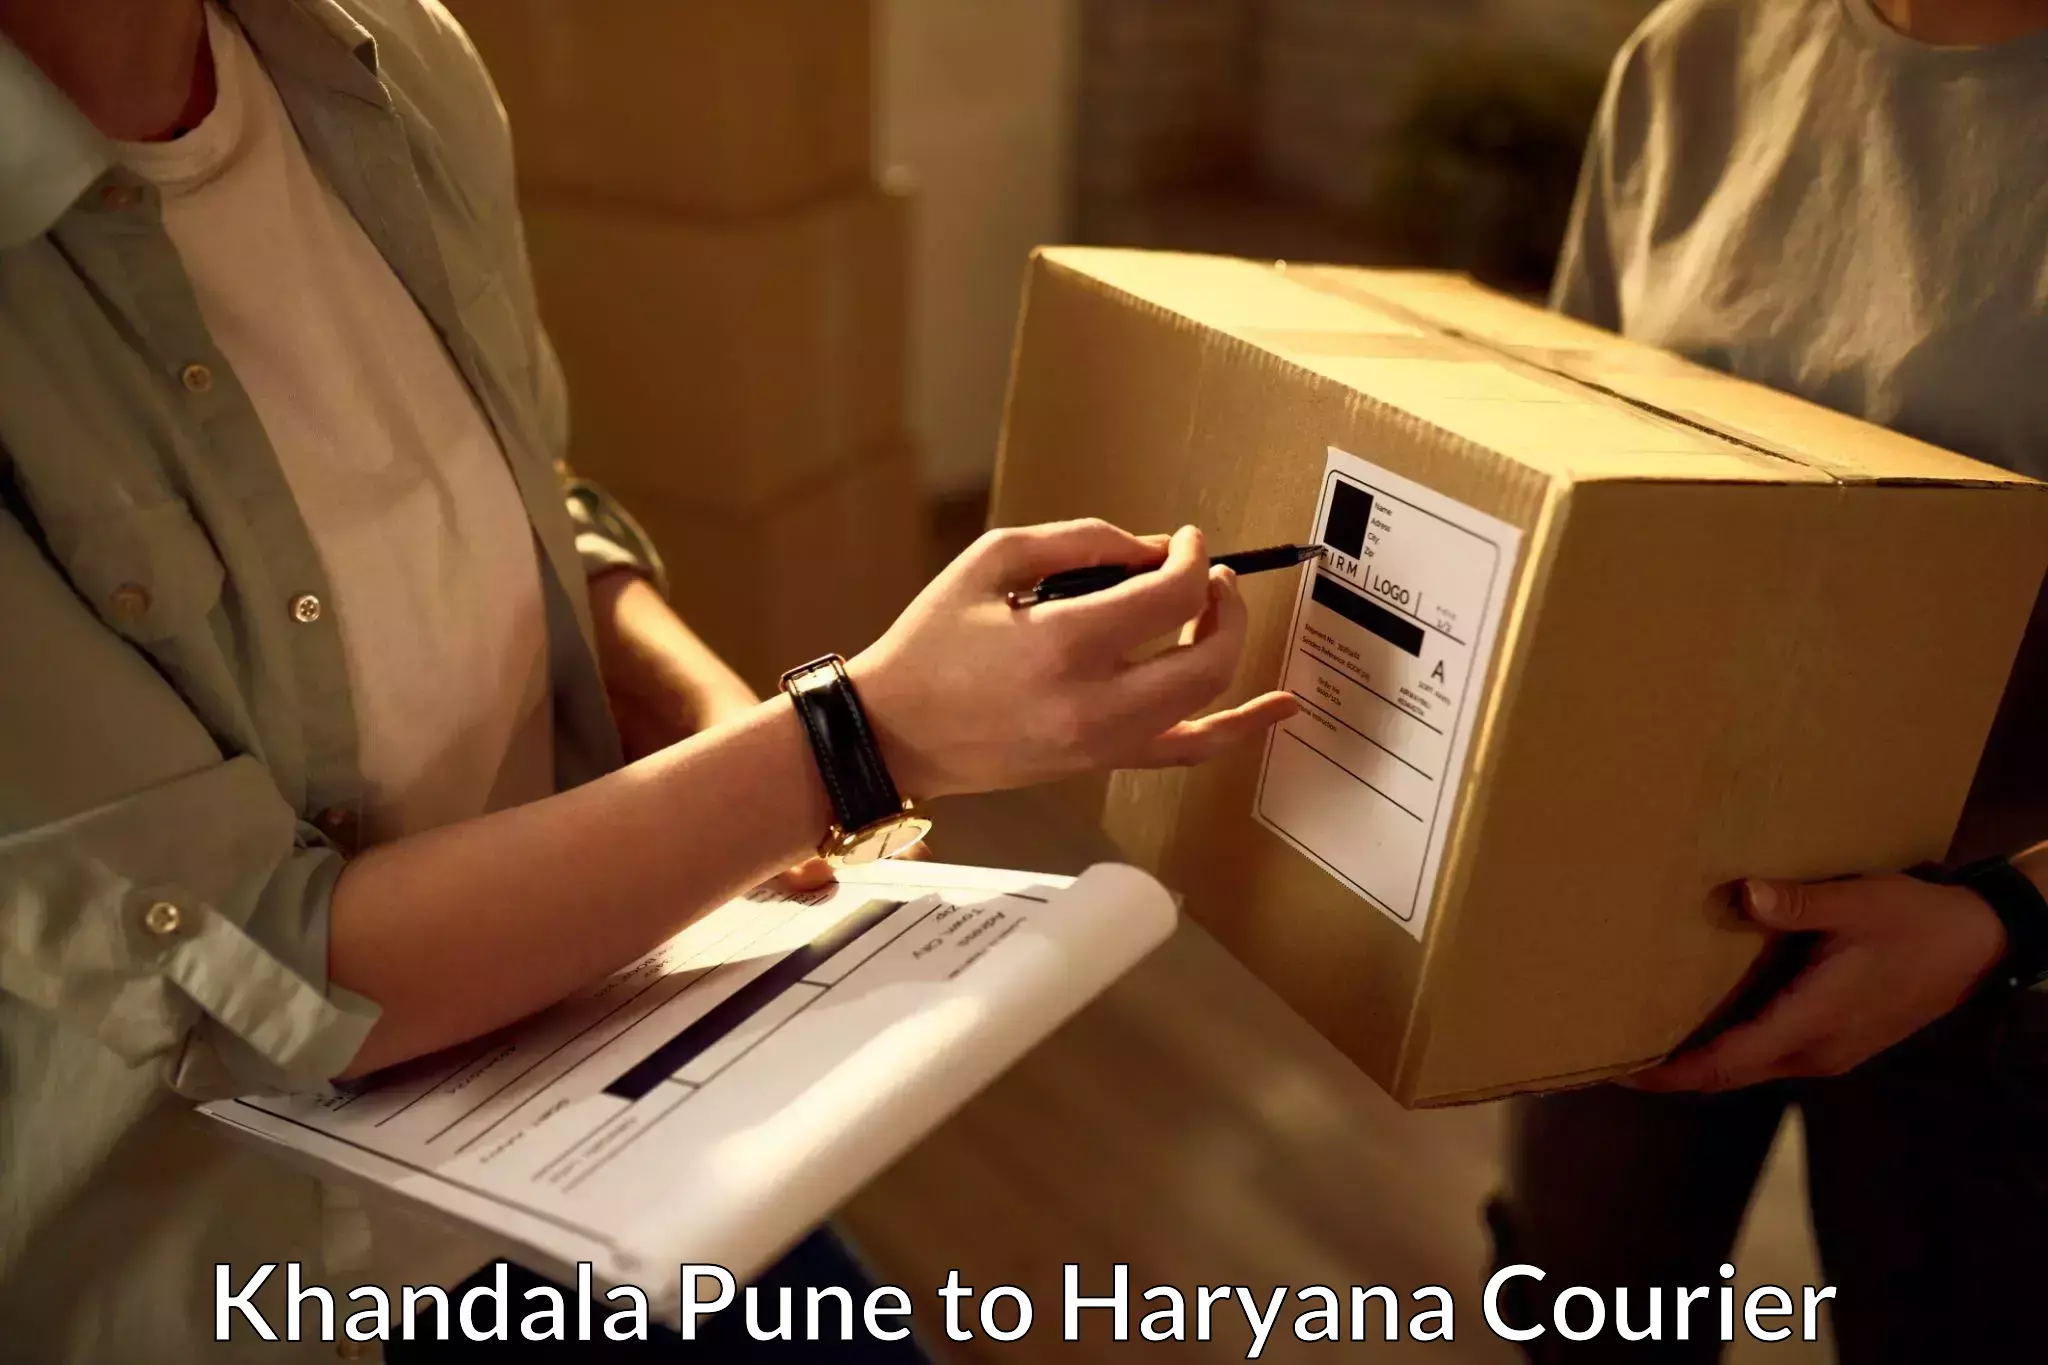 Bulk shipping discounts Khandala Pune to Chaudhary Charan Singh Haryana Agricultural University Hisar